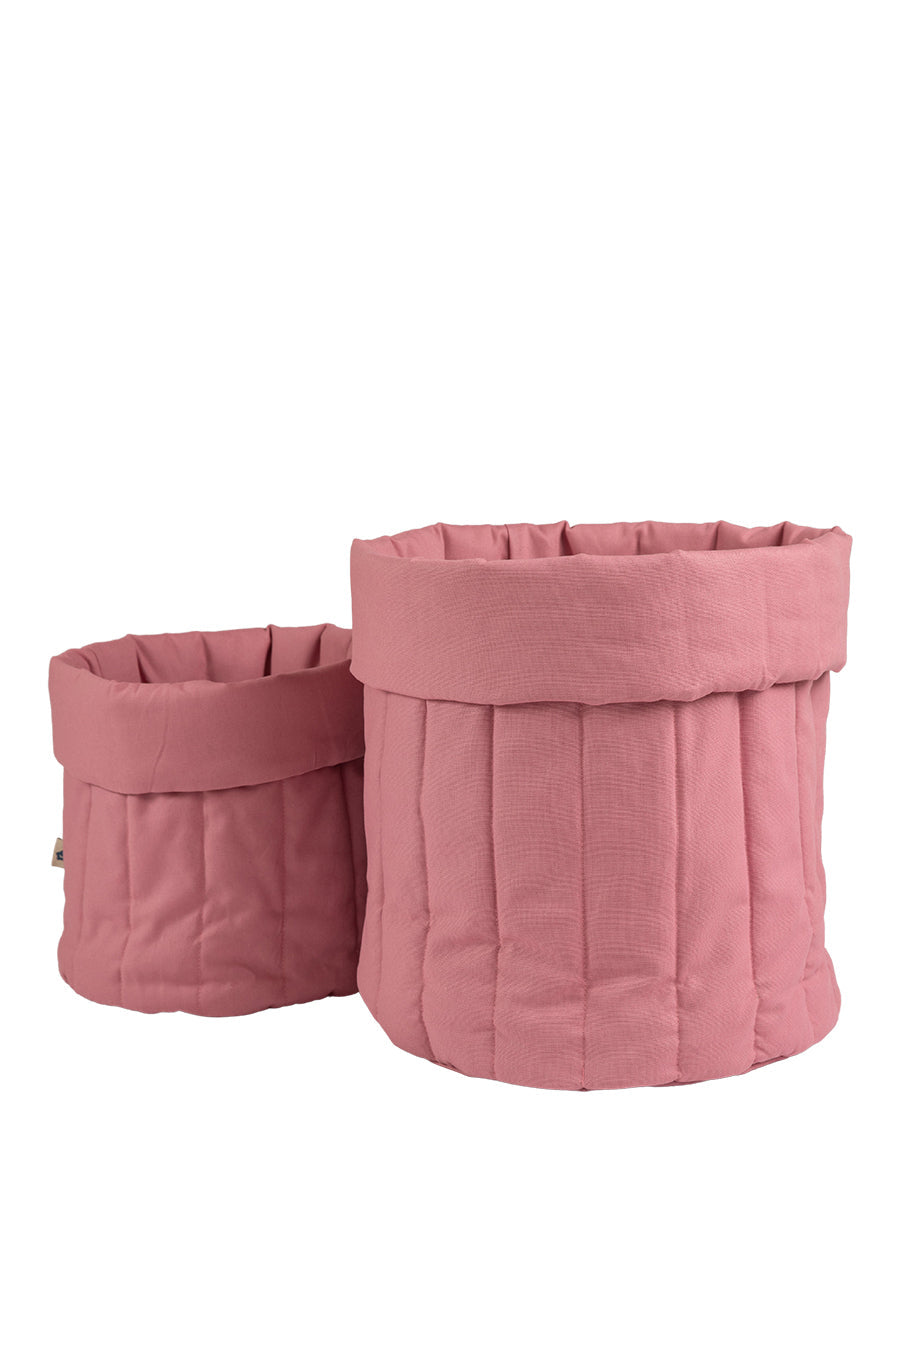 Blush Pink Toy Bag Storage Wigiwama 